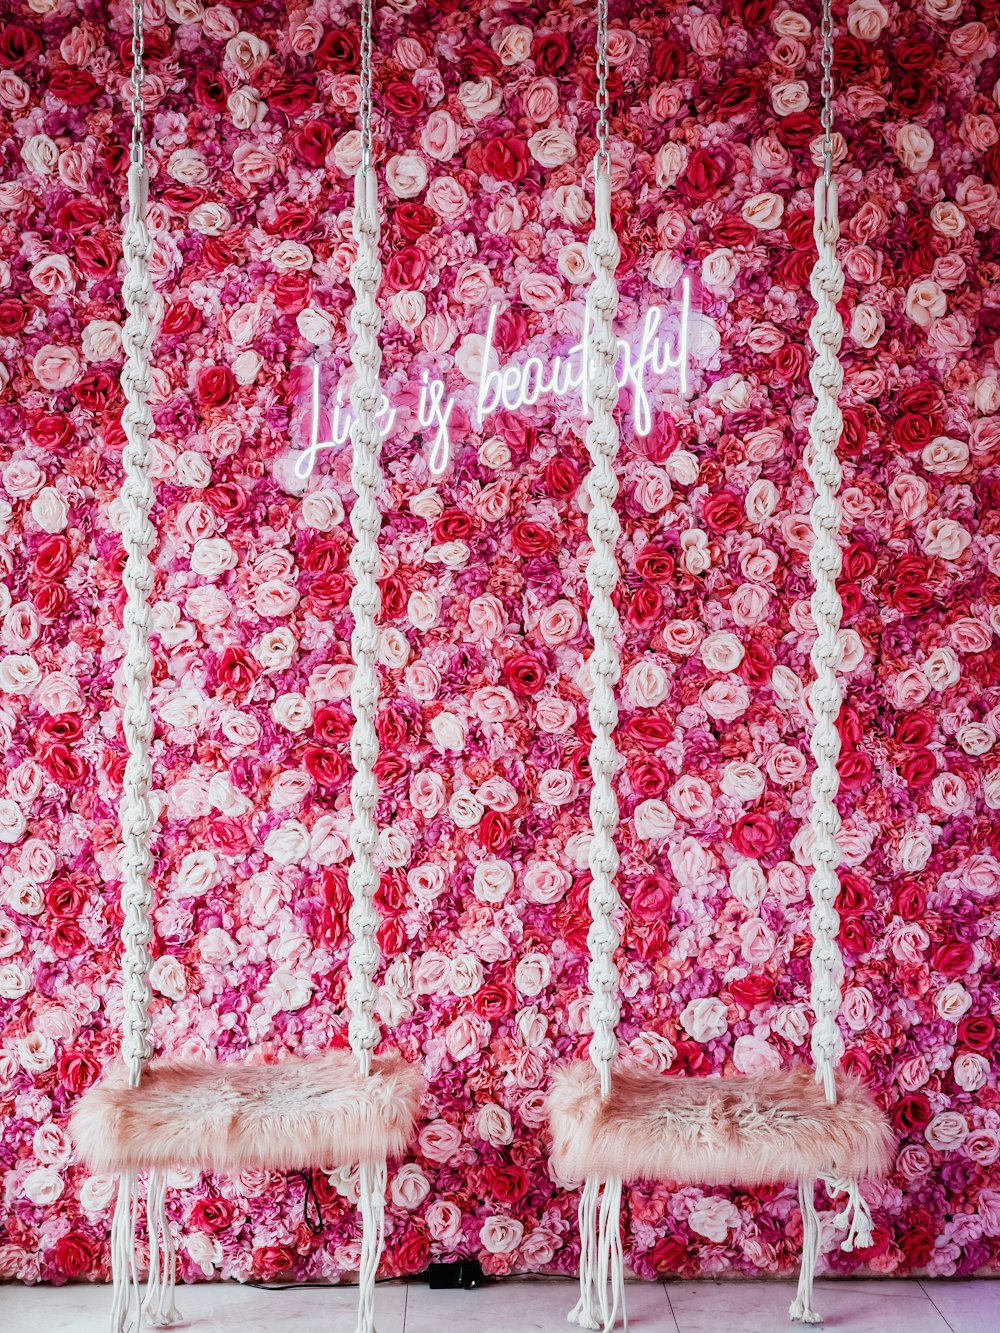 Deux chaises blanches assises devant un mur de fleurs roses